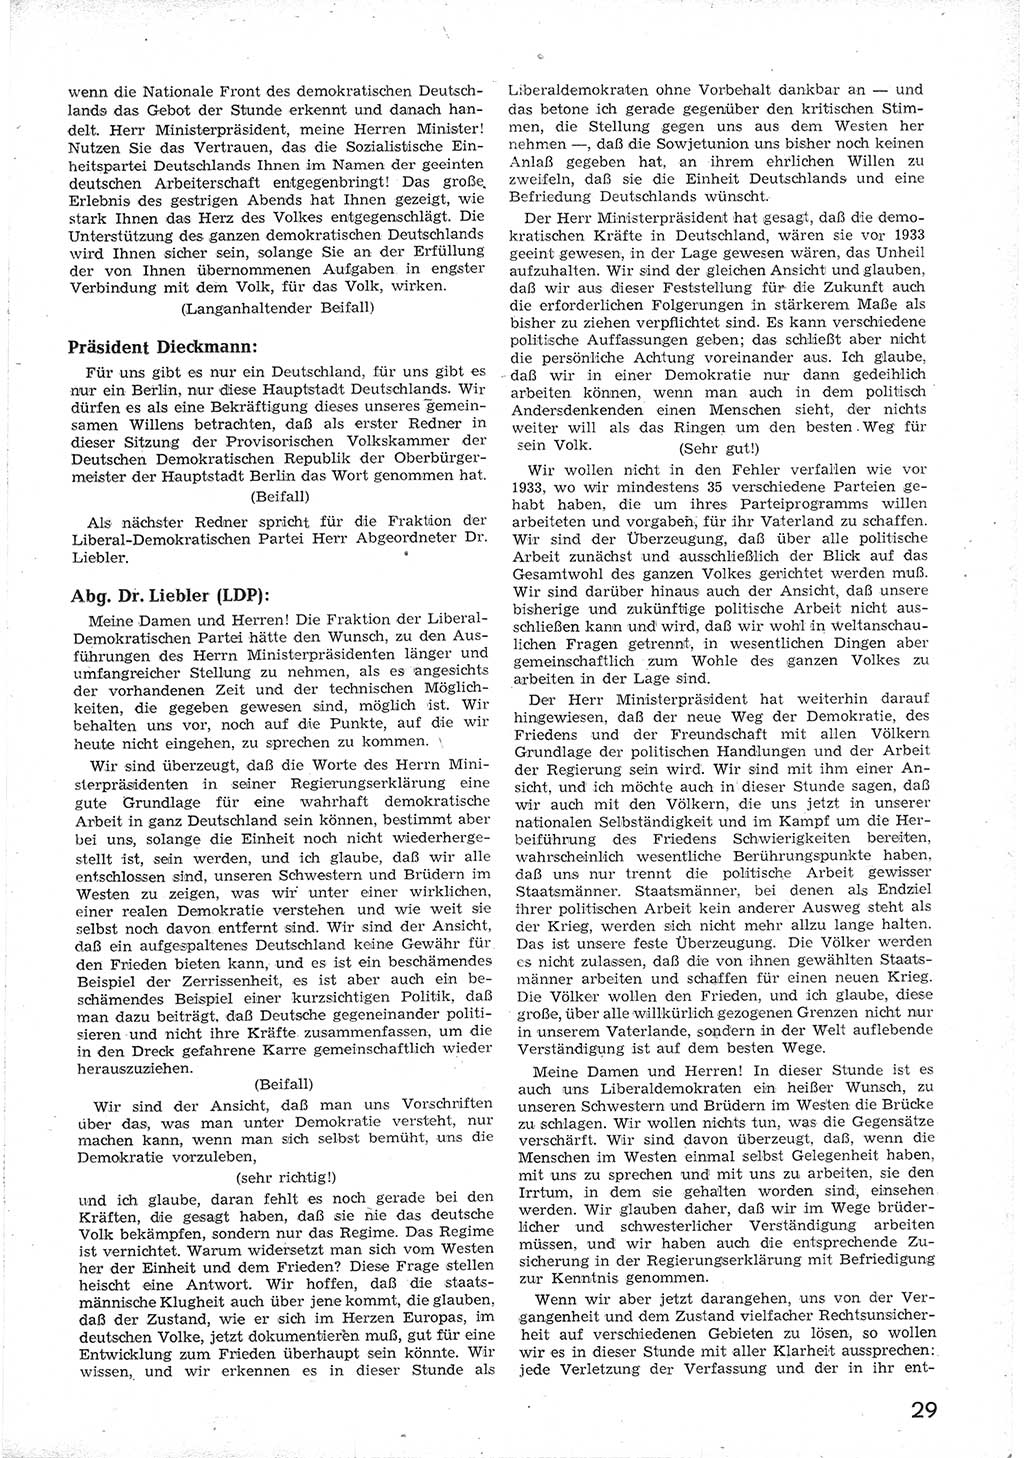 Provisorische Volkskammer (VK) der Deutschen Demokratischen Republik (DDR) 1949-1950, Dokument 41 (Prov. VK DDR 1949-1950, Dok. 41)